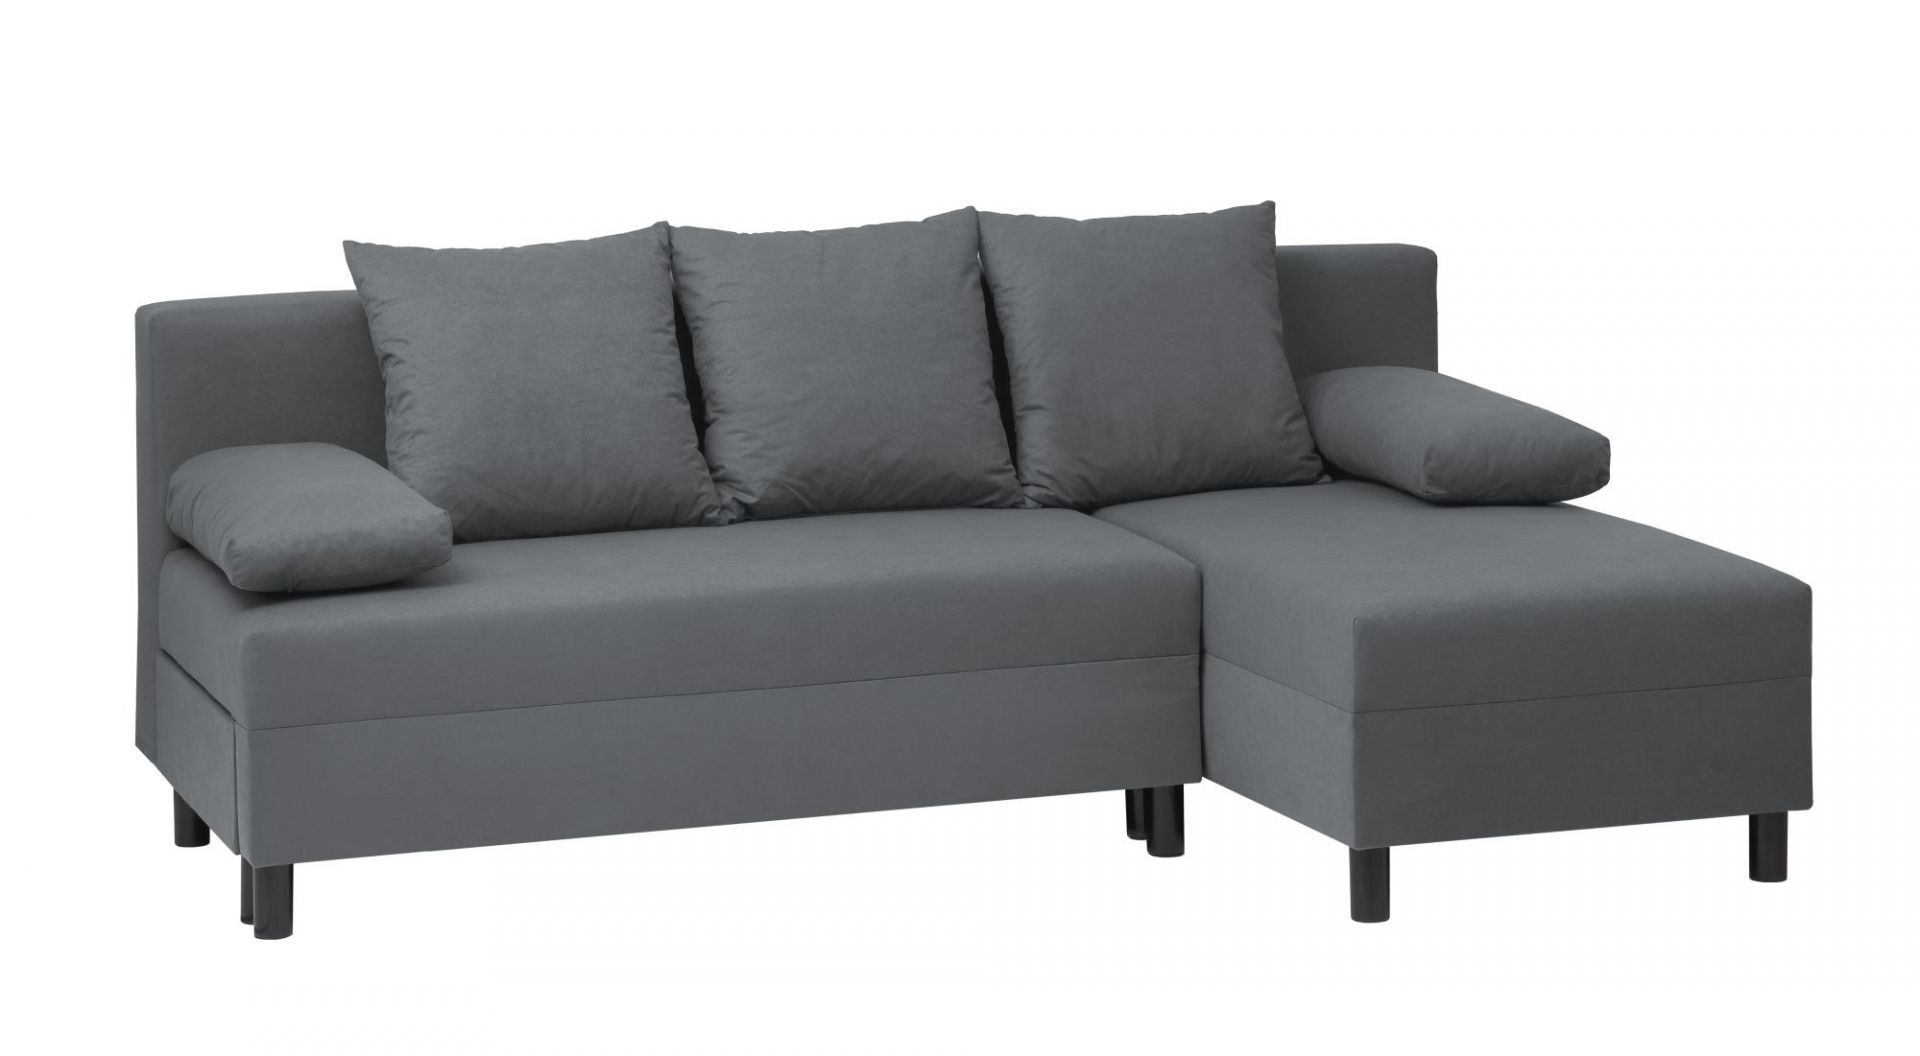 ANGSTA IKEA to rozkładana sofa narożna z leżanką (sofa, leżanka i dwuosobowe łóżko w jednym). Wymiary: 195x86x74 cm. Posiada pojemnik na pościel. SUGEROWANA CENA DETALICZNA: 799 zł Fot. IKEA